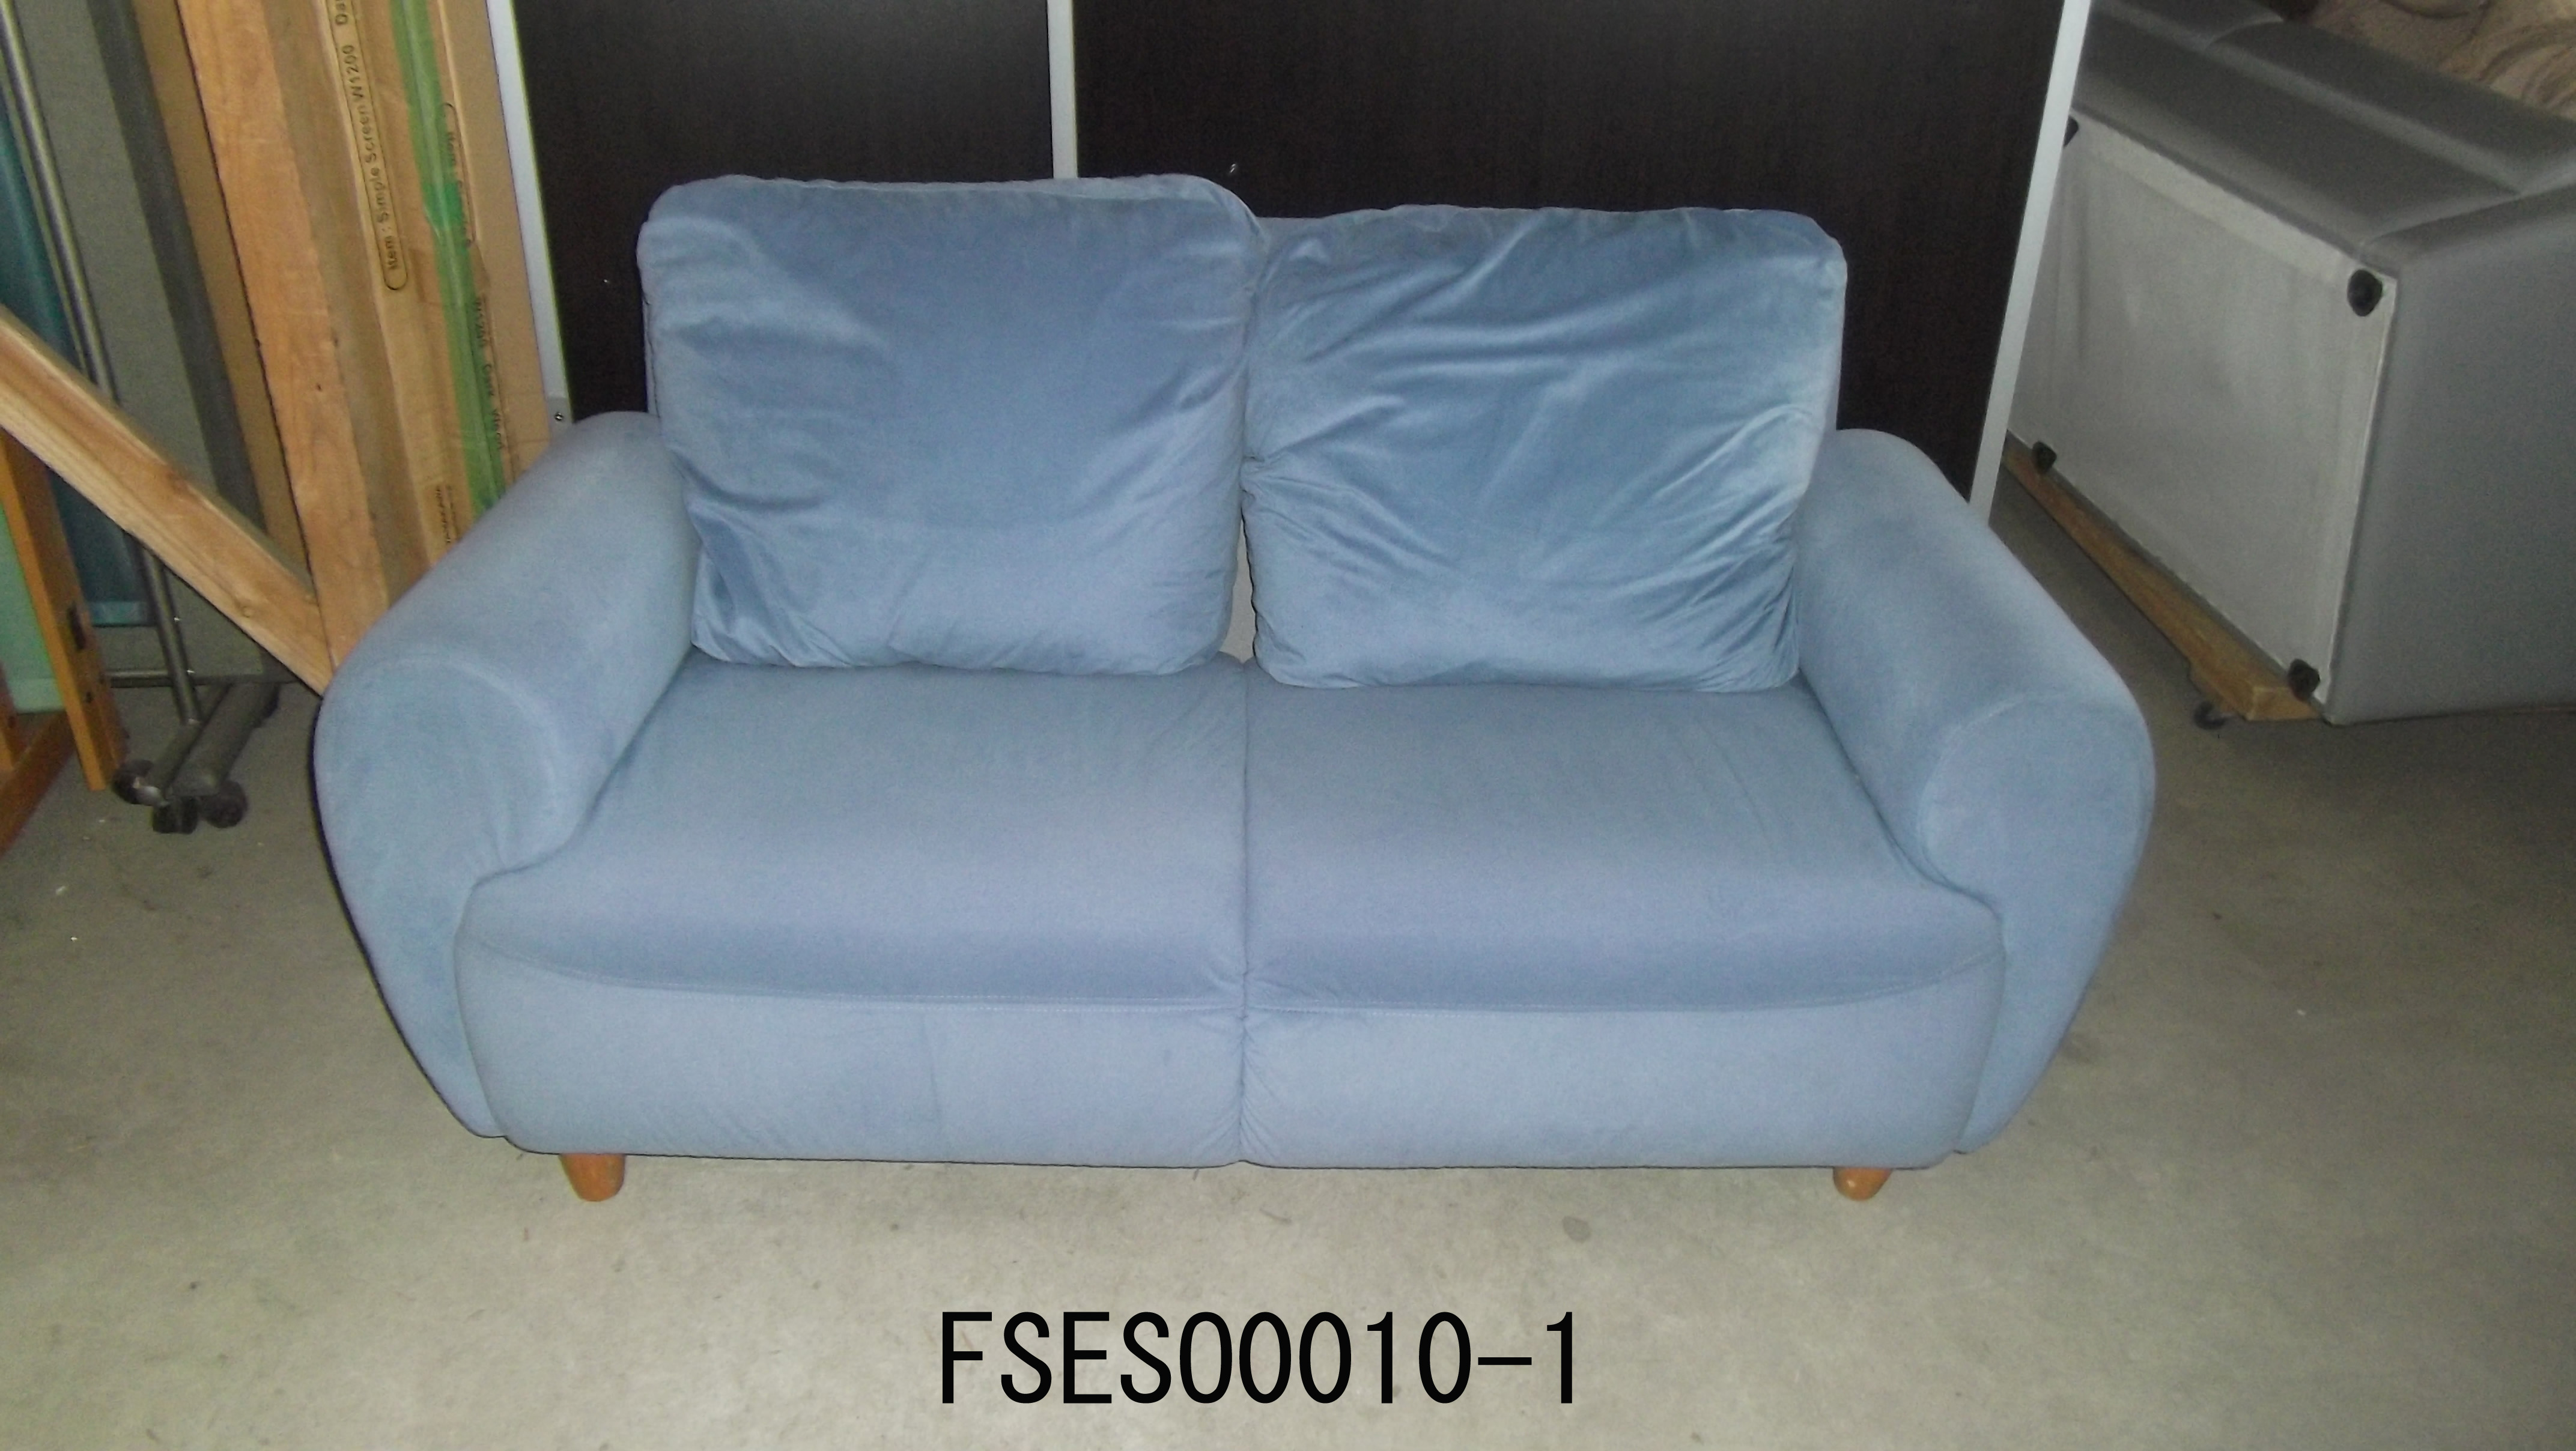 FSESO0010-1